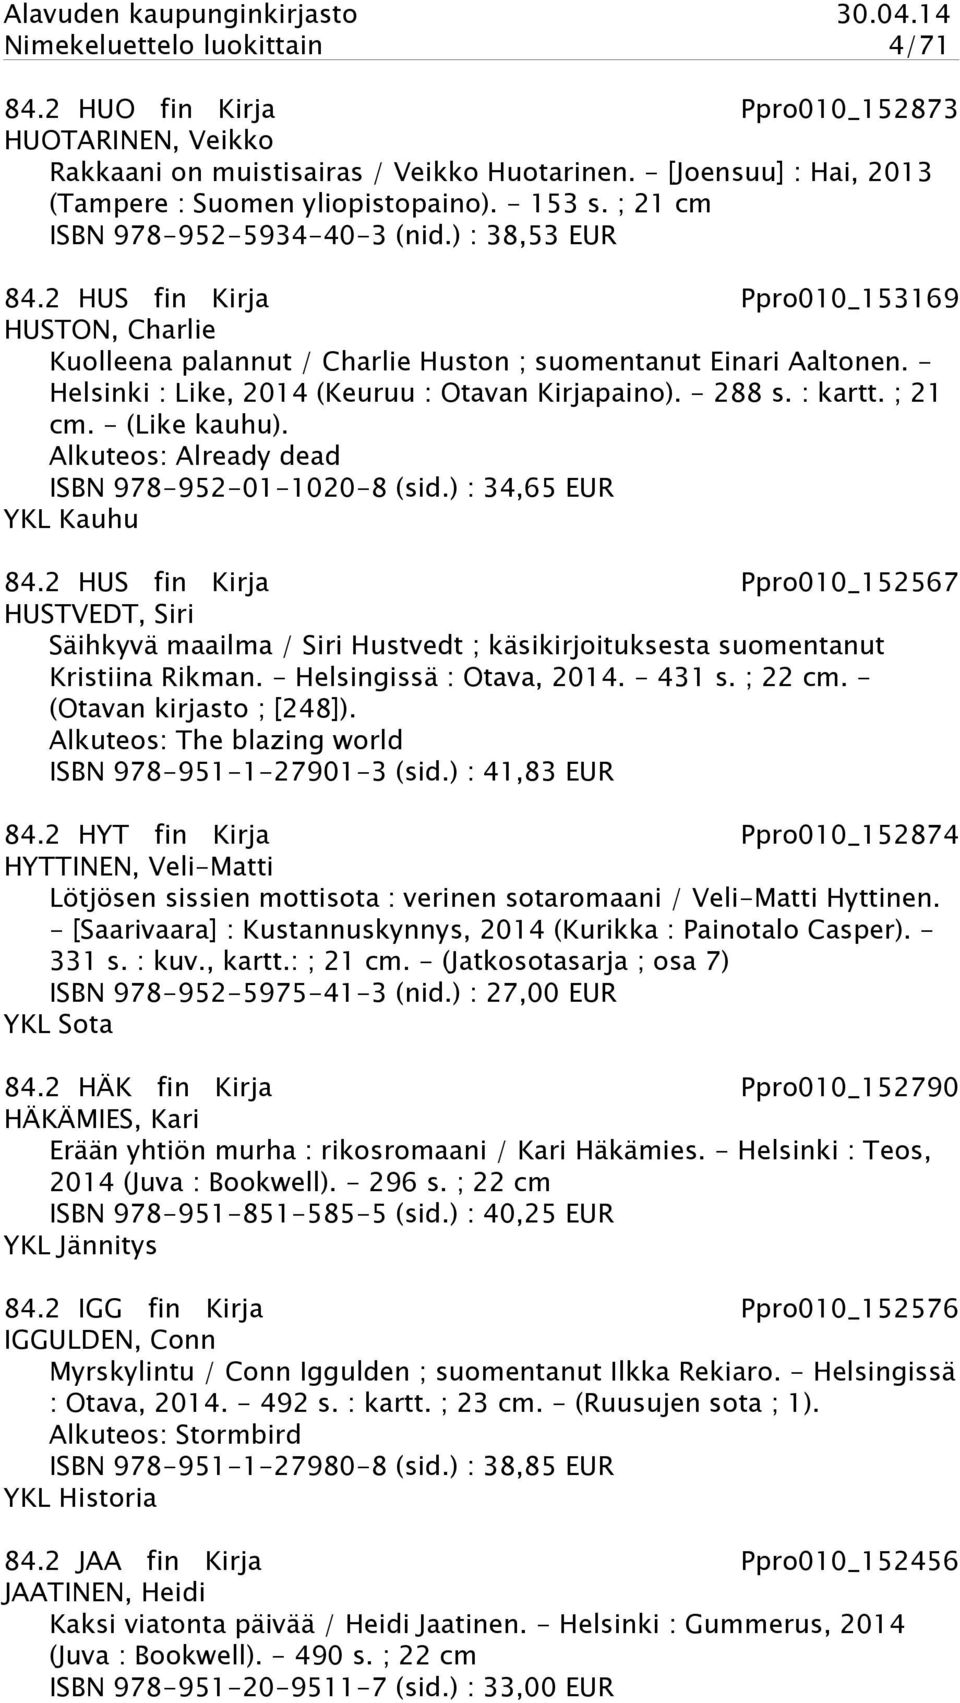 - Helsinki : Like, 2014 (Keuruu : Otavan Kirjapaino). - 288 s. : kartt. ; 21 cm. - (Like kauhu). Alkuteos: Already dead ISBN 978-952-01-1020-8 (sid.) : 34,65 EUR YKL Kauhu 84.